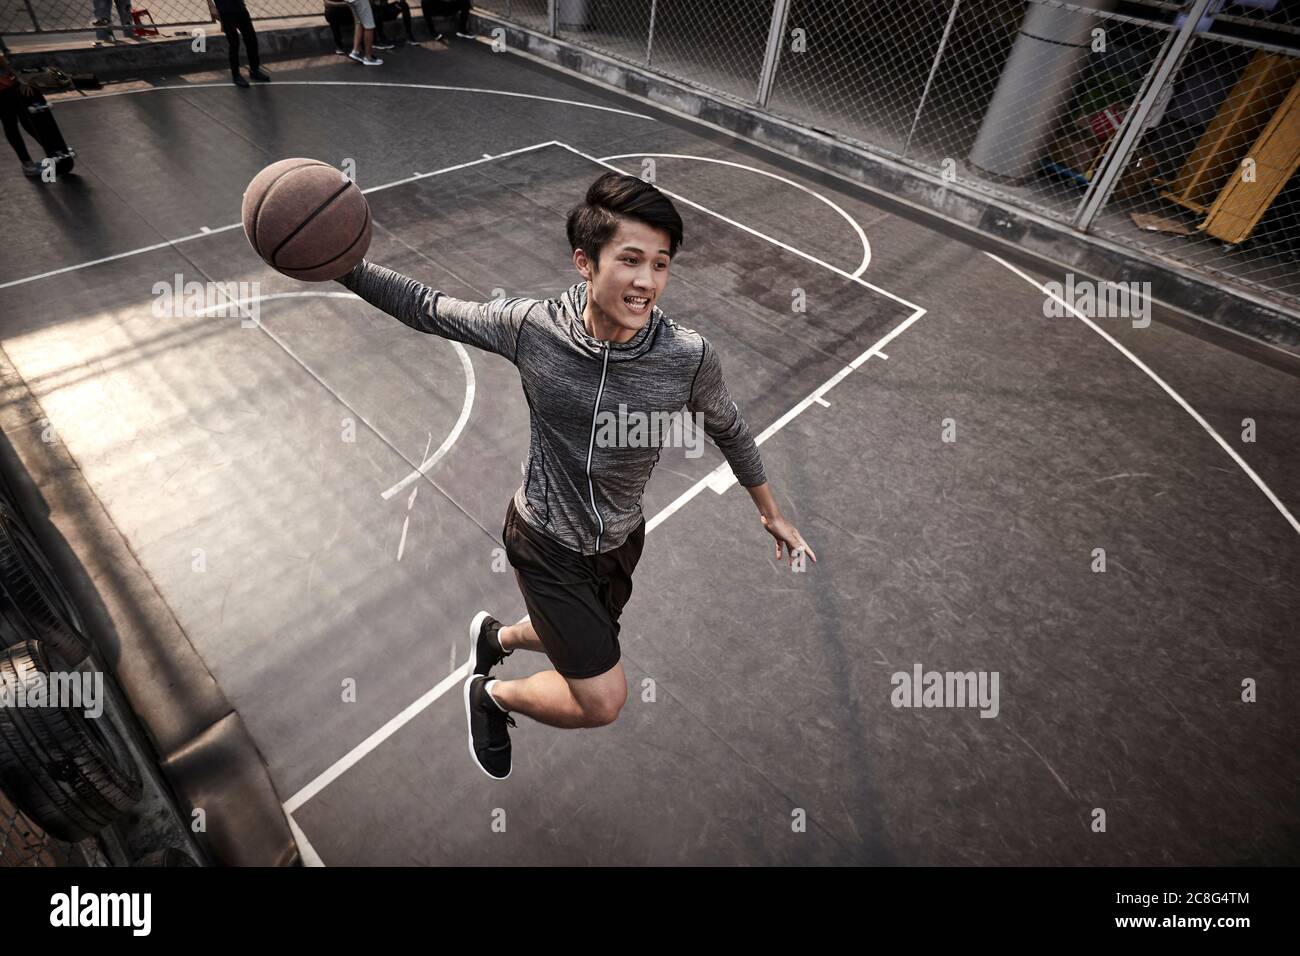 jeune asiatique adulte homme joueur de basket-ball essayant une dunk slam sur le terrain extérieur Banque D'Images